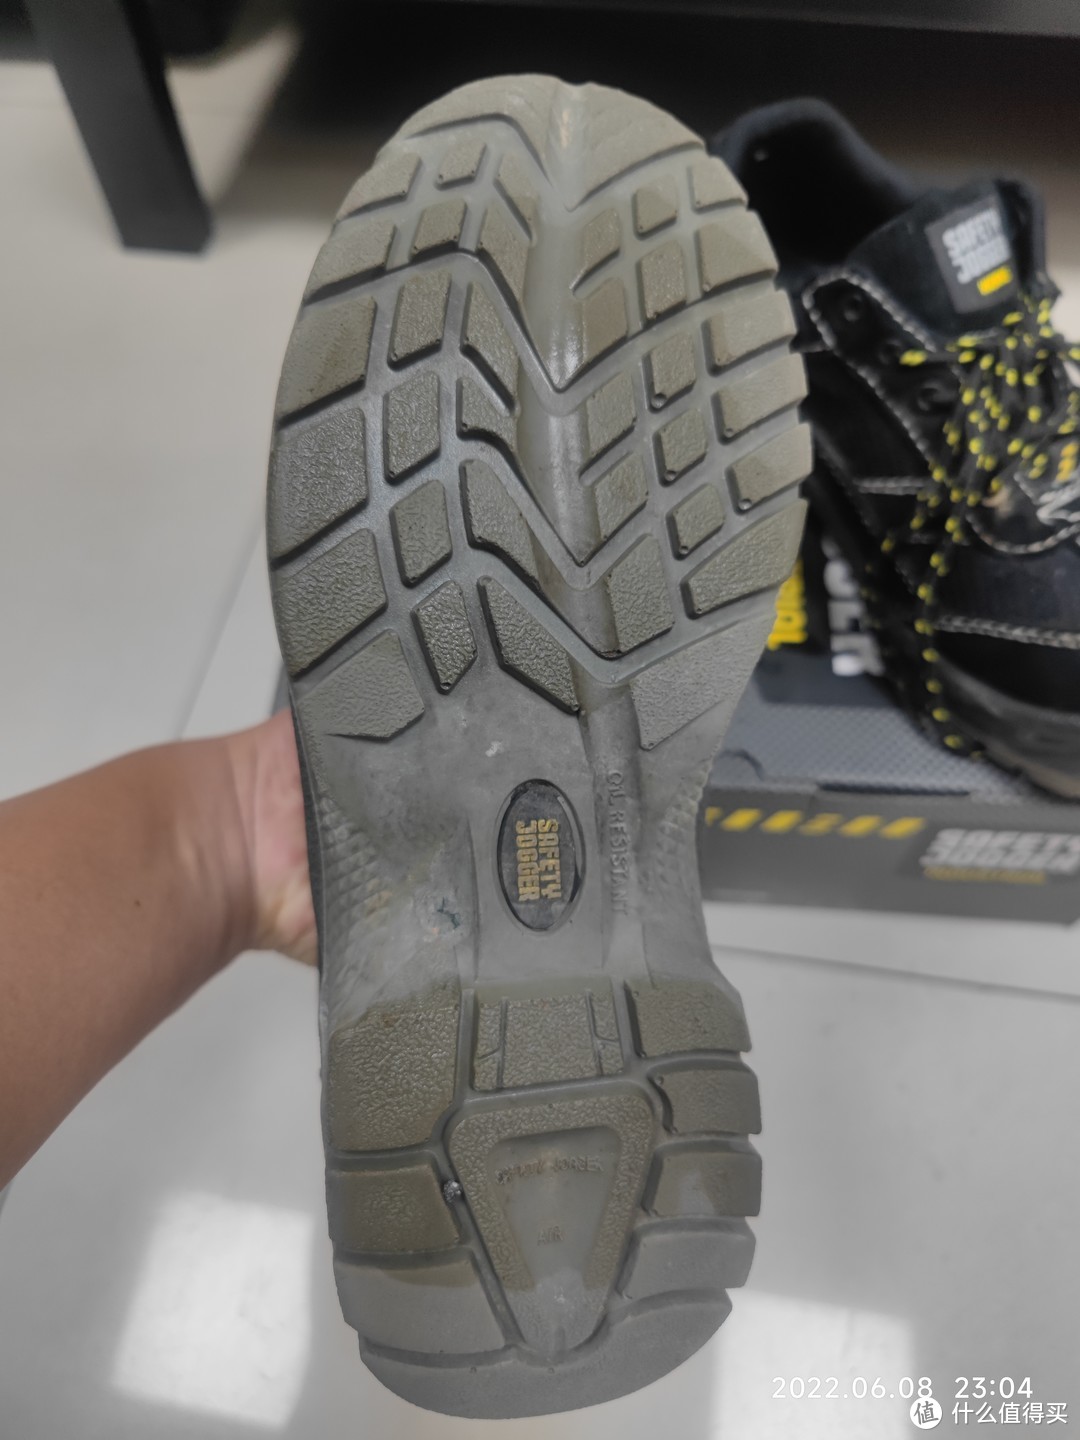 鞋底超级耐磨，足弓处类似碳纤维样子